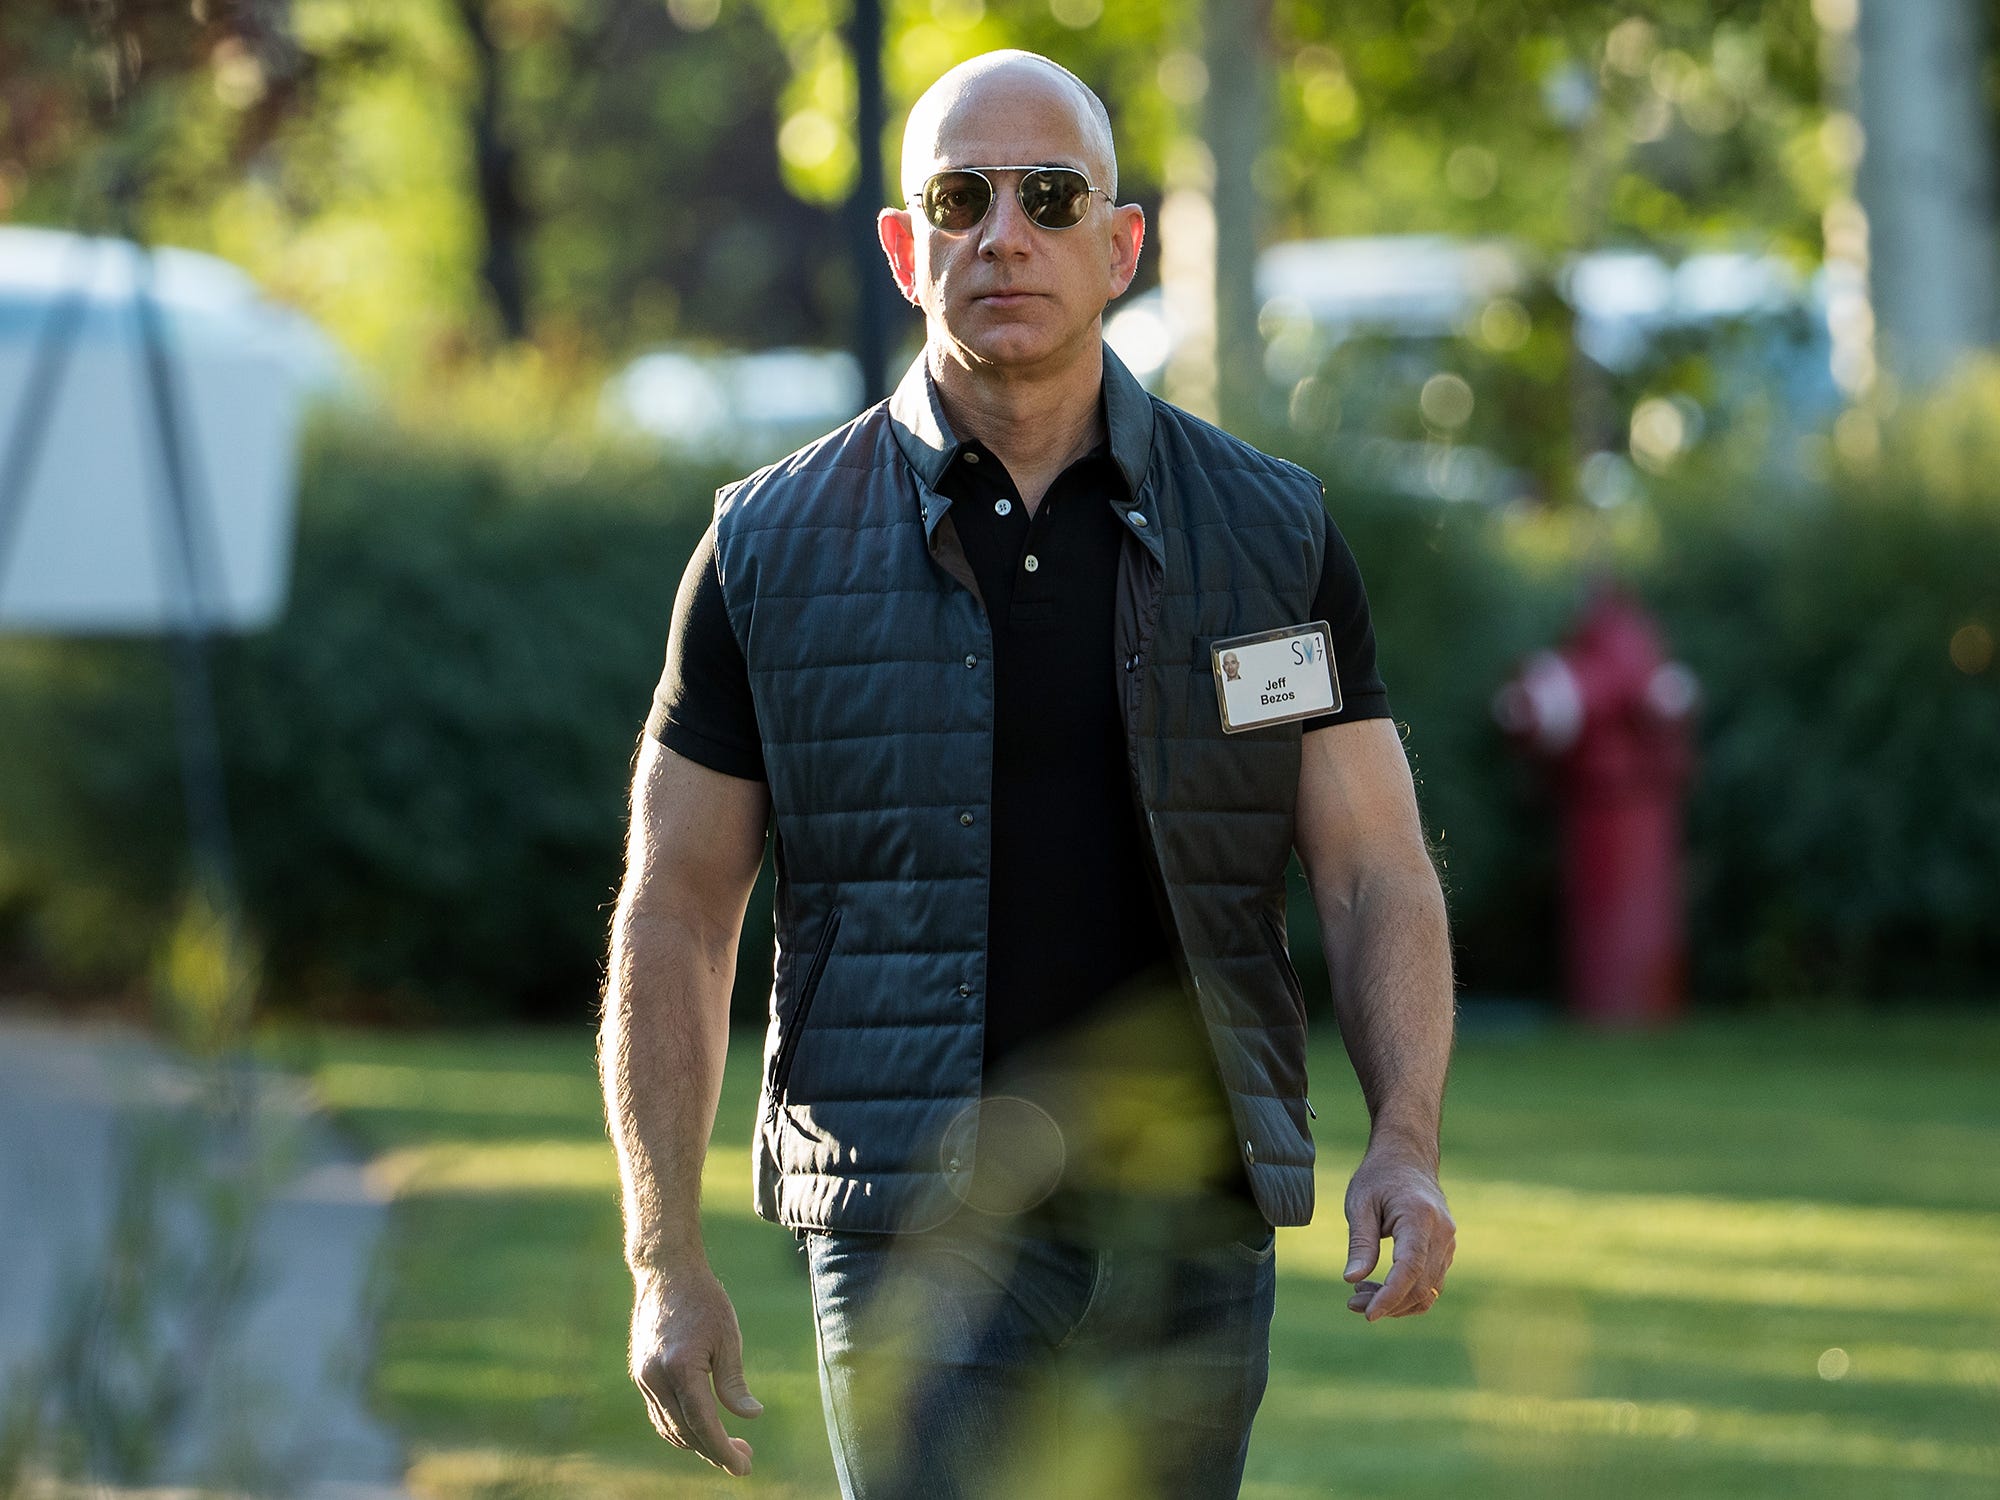 Jeff Bezos, blauer Ursprung, Amazon-Gründer, Sonnenbrille, hartes Gesicht, GettyImages 813884326 4x3